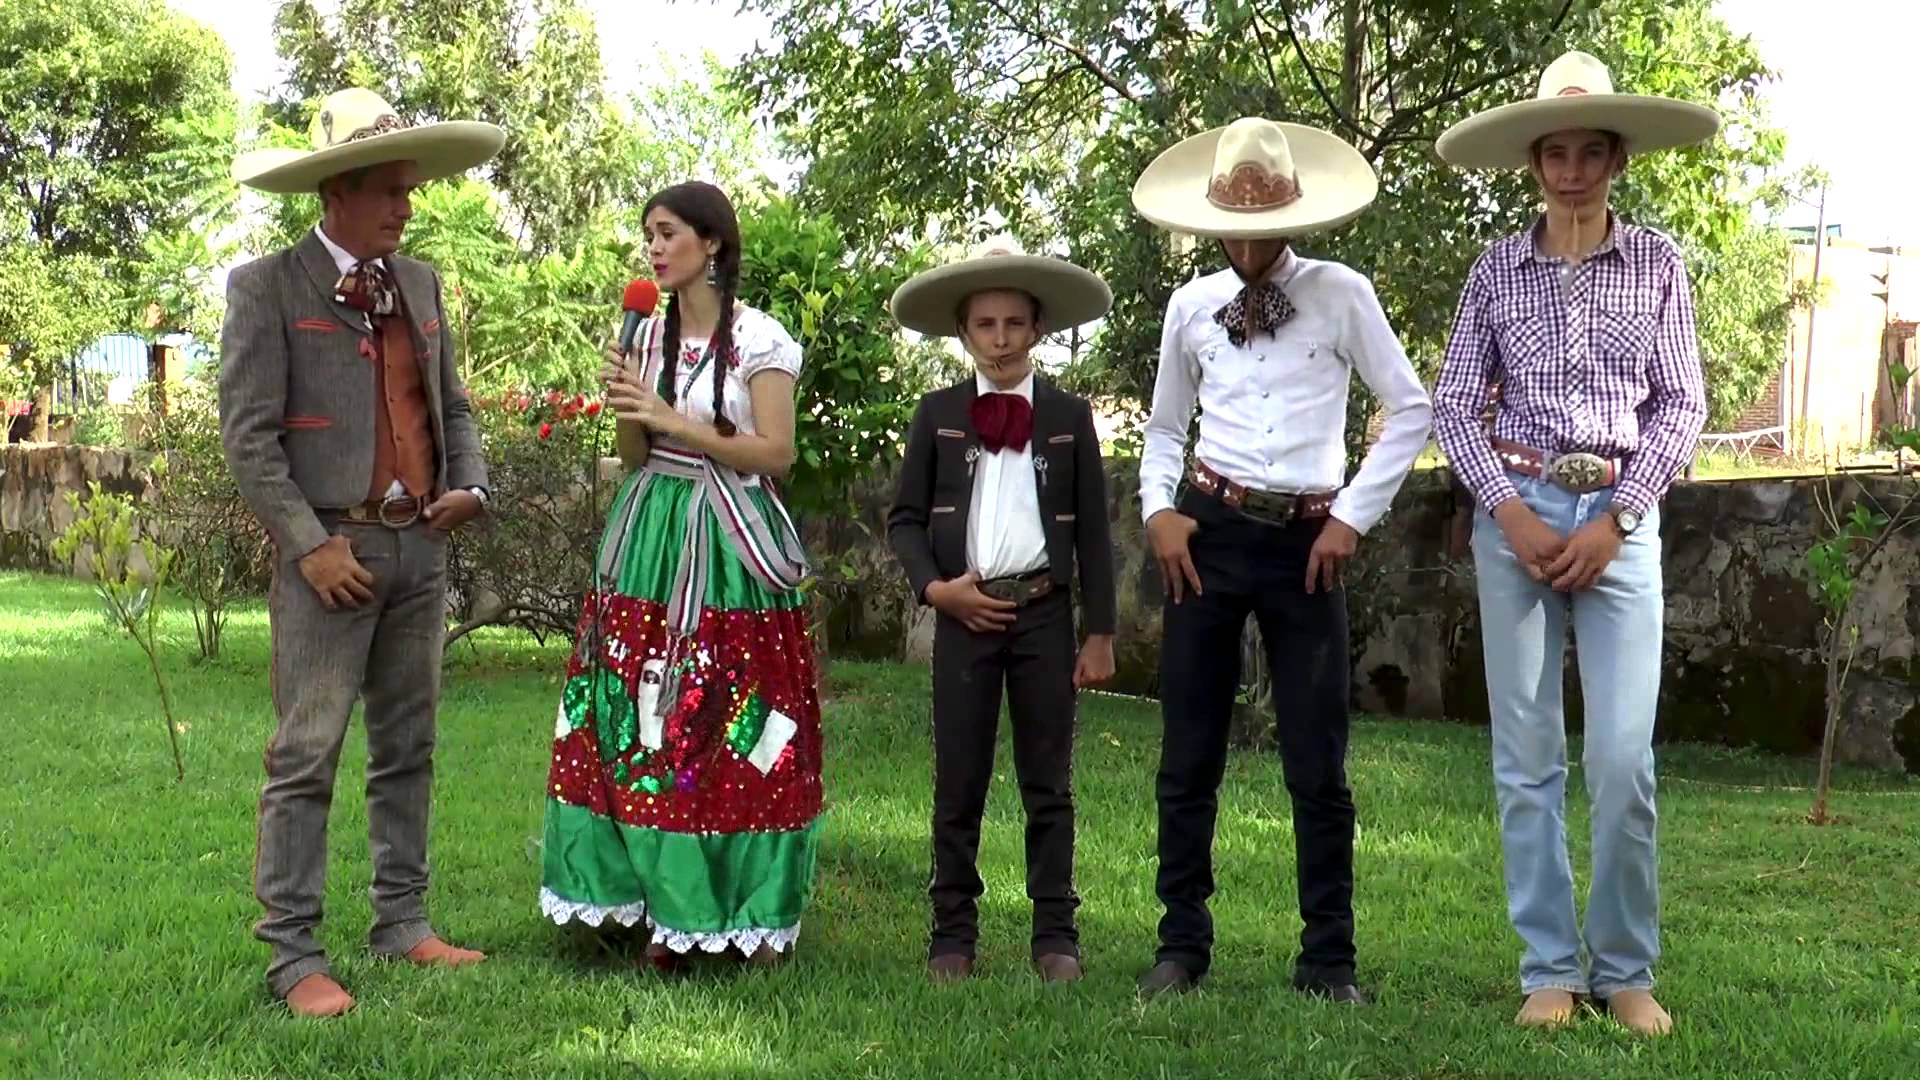 tenis jordan max aura 2. Traje típico de México Conoce la vestimenta mexica...